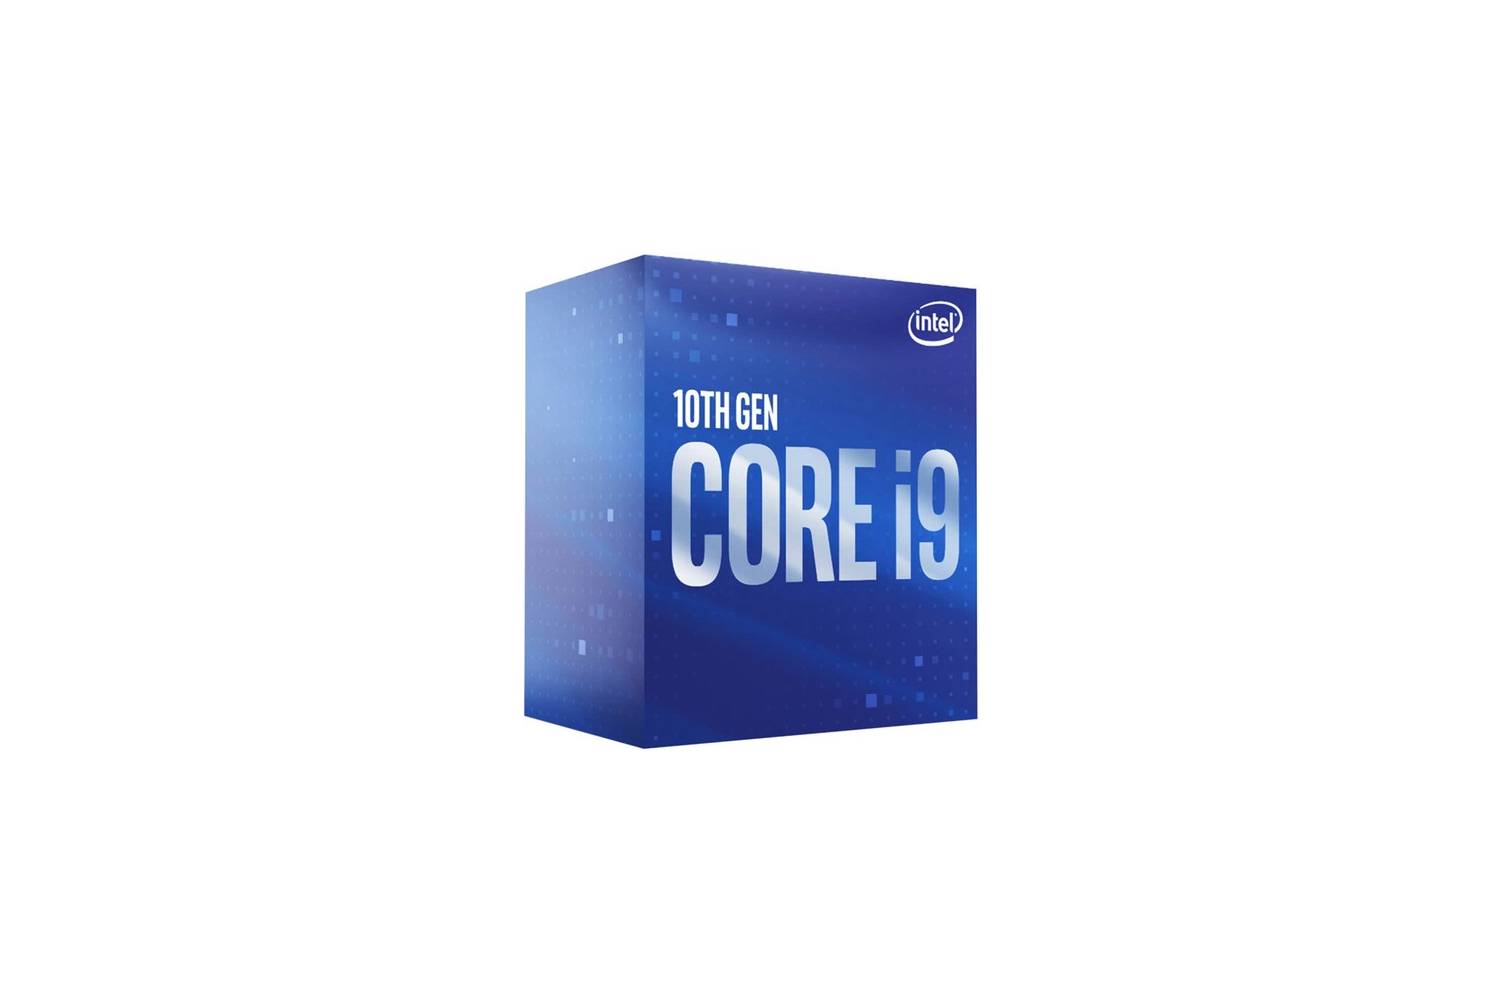 Intel Core I9 10900 Desktop Processor 10 Cores 5.2 GHz LGA1200